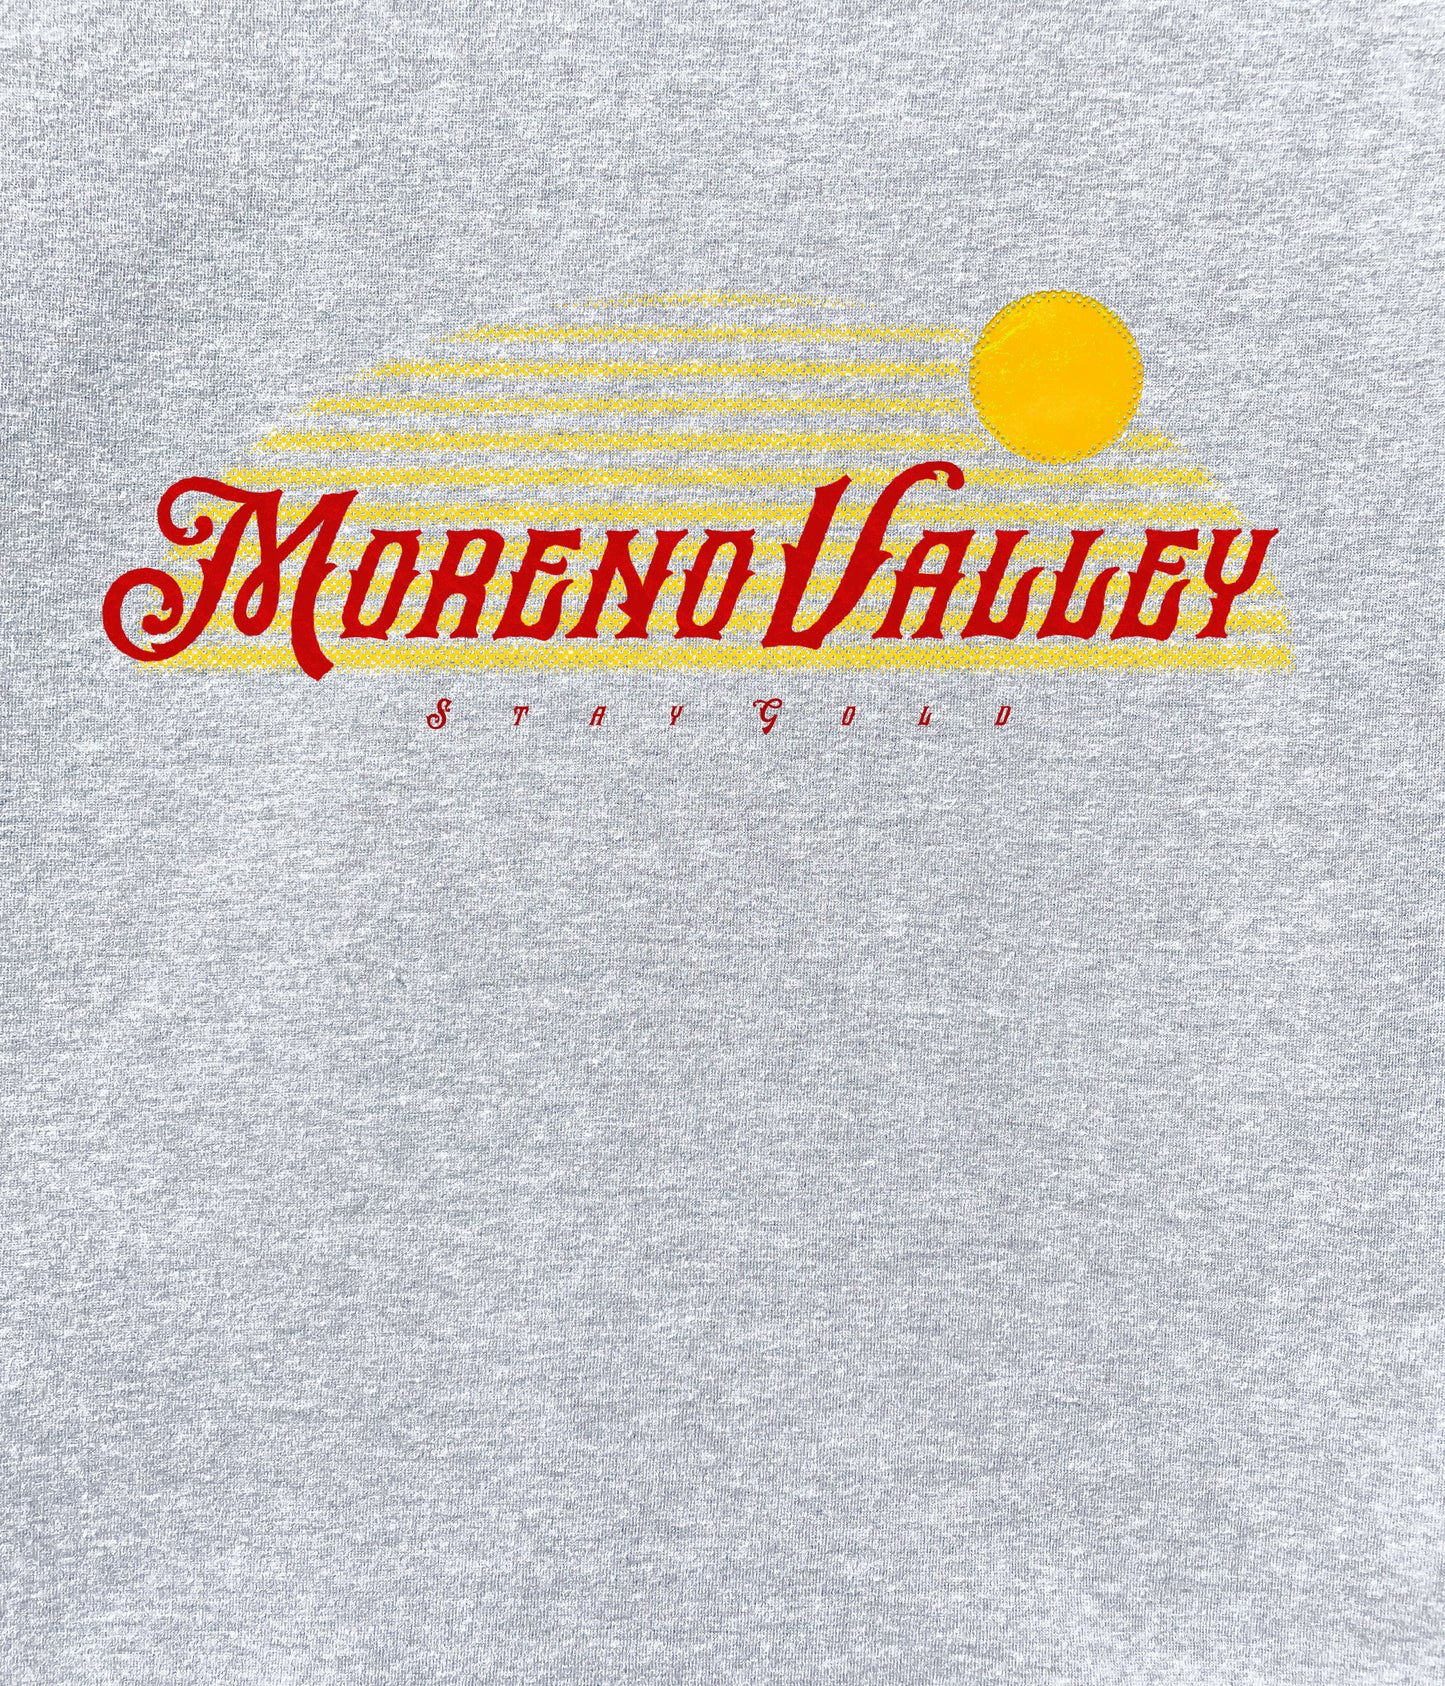 Moreno Valley Stay Gold Crewneck Sweatshirt